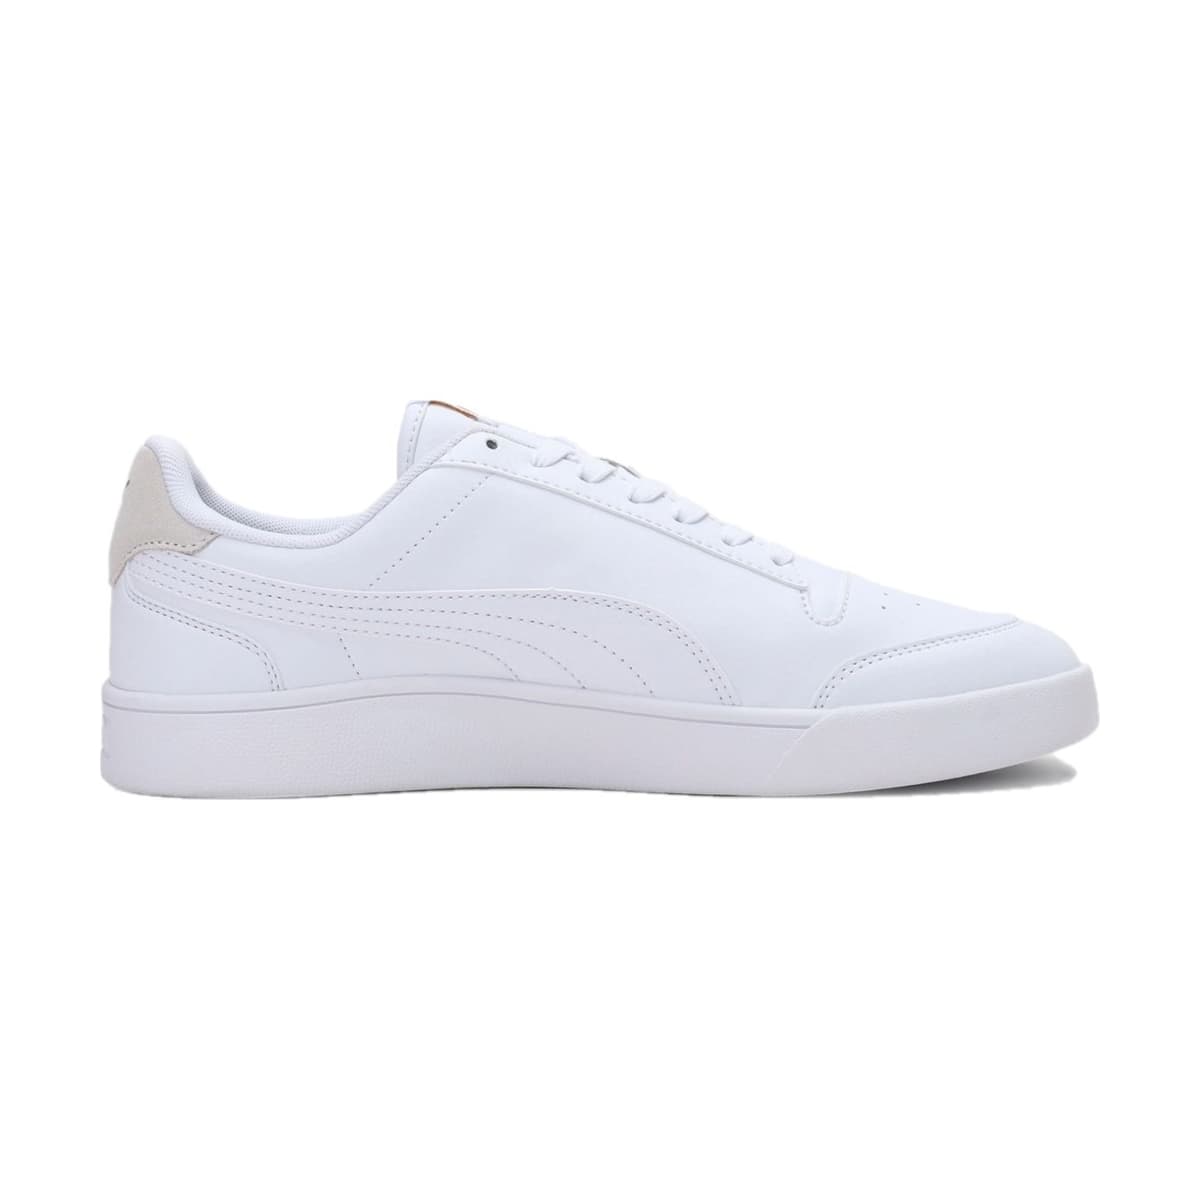 Puma Shuffle Beyaz Spor Ayakkabı (309668-08)